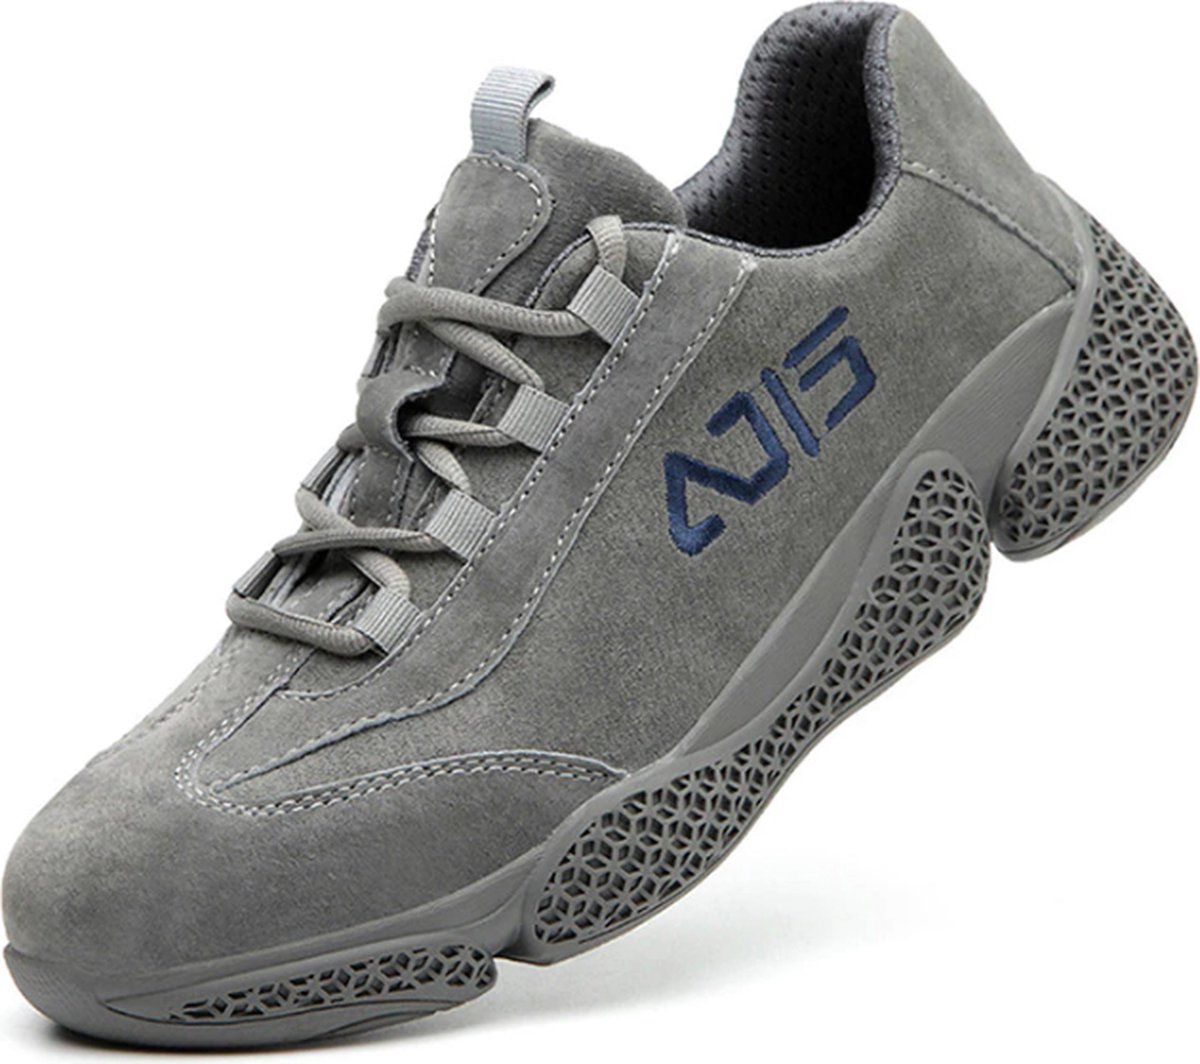 Werkschoenen - 42 - Dames / Heren - ZX Fashion - Lederen Veiligheidsschoenen - Schoenen voor werk - Werkende laarzen - Beschermende schoenen - Anti ippact - Onmenkijable Sole - Anti slip - Beschermende neus - Beschermende zool